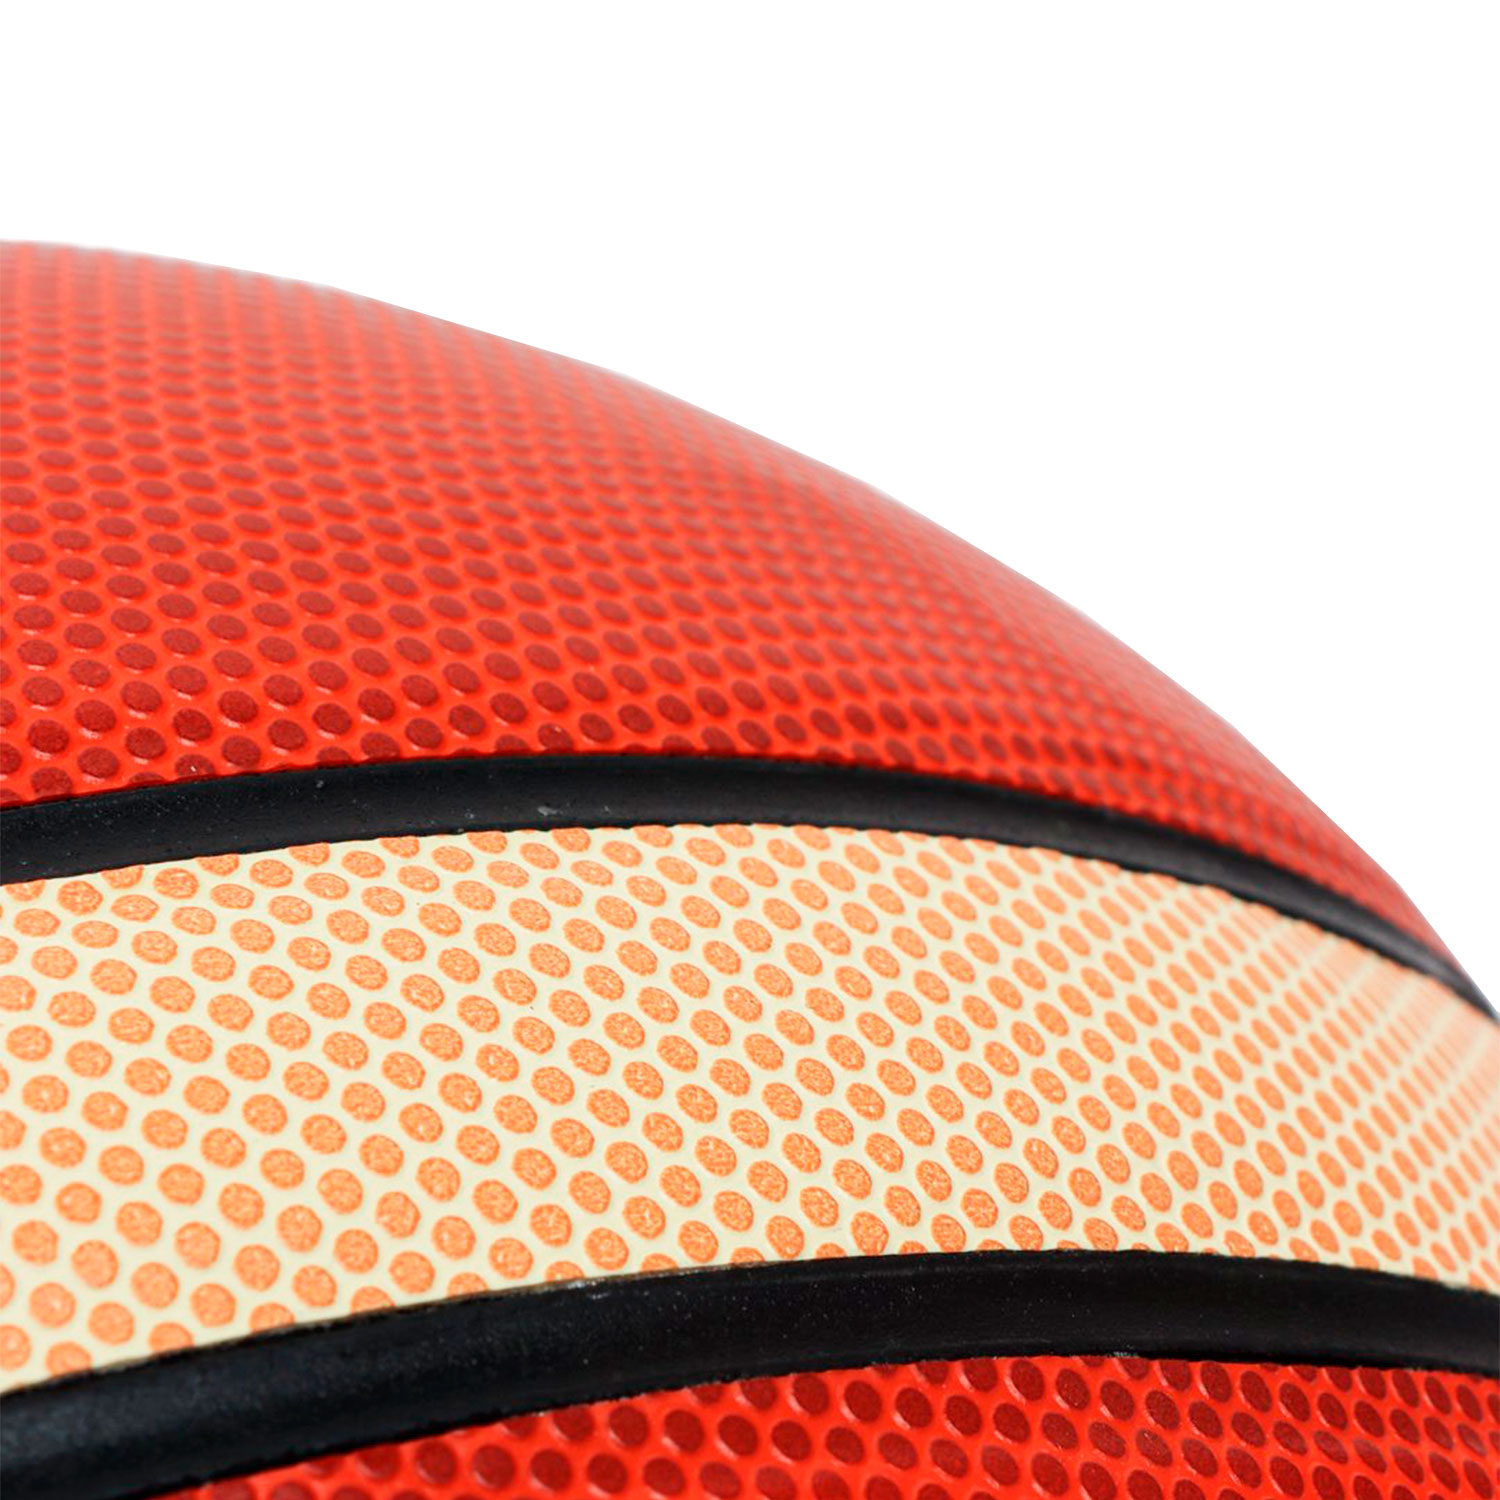 Баскетбольный мяч Powergym FIBA